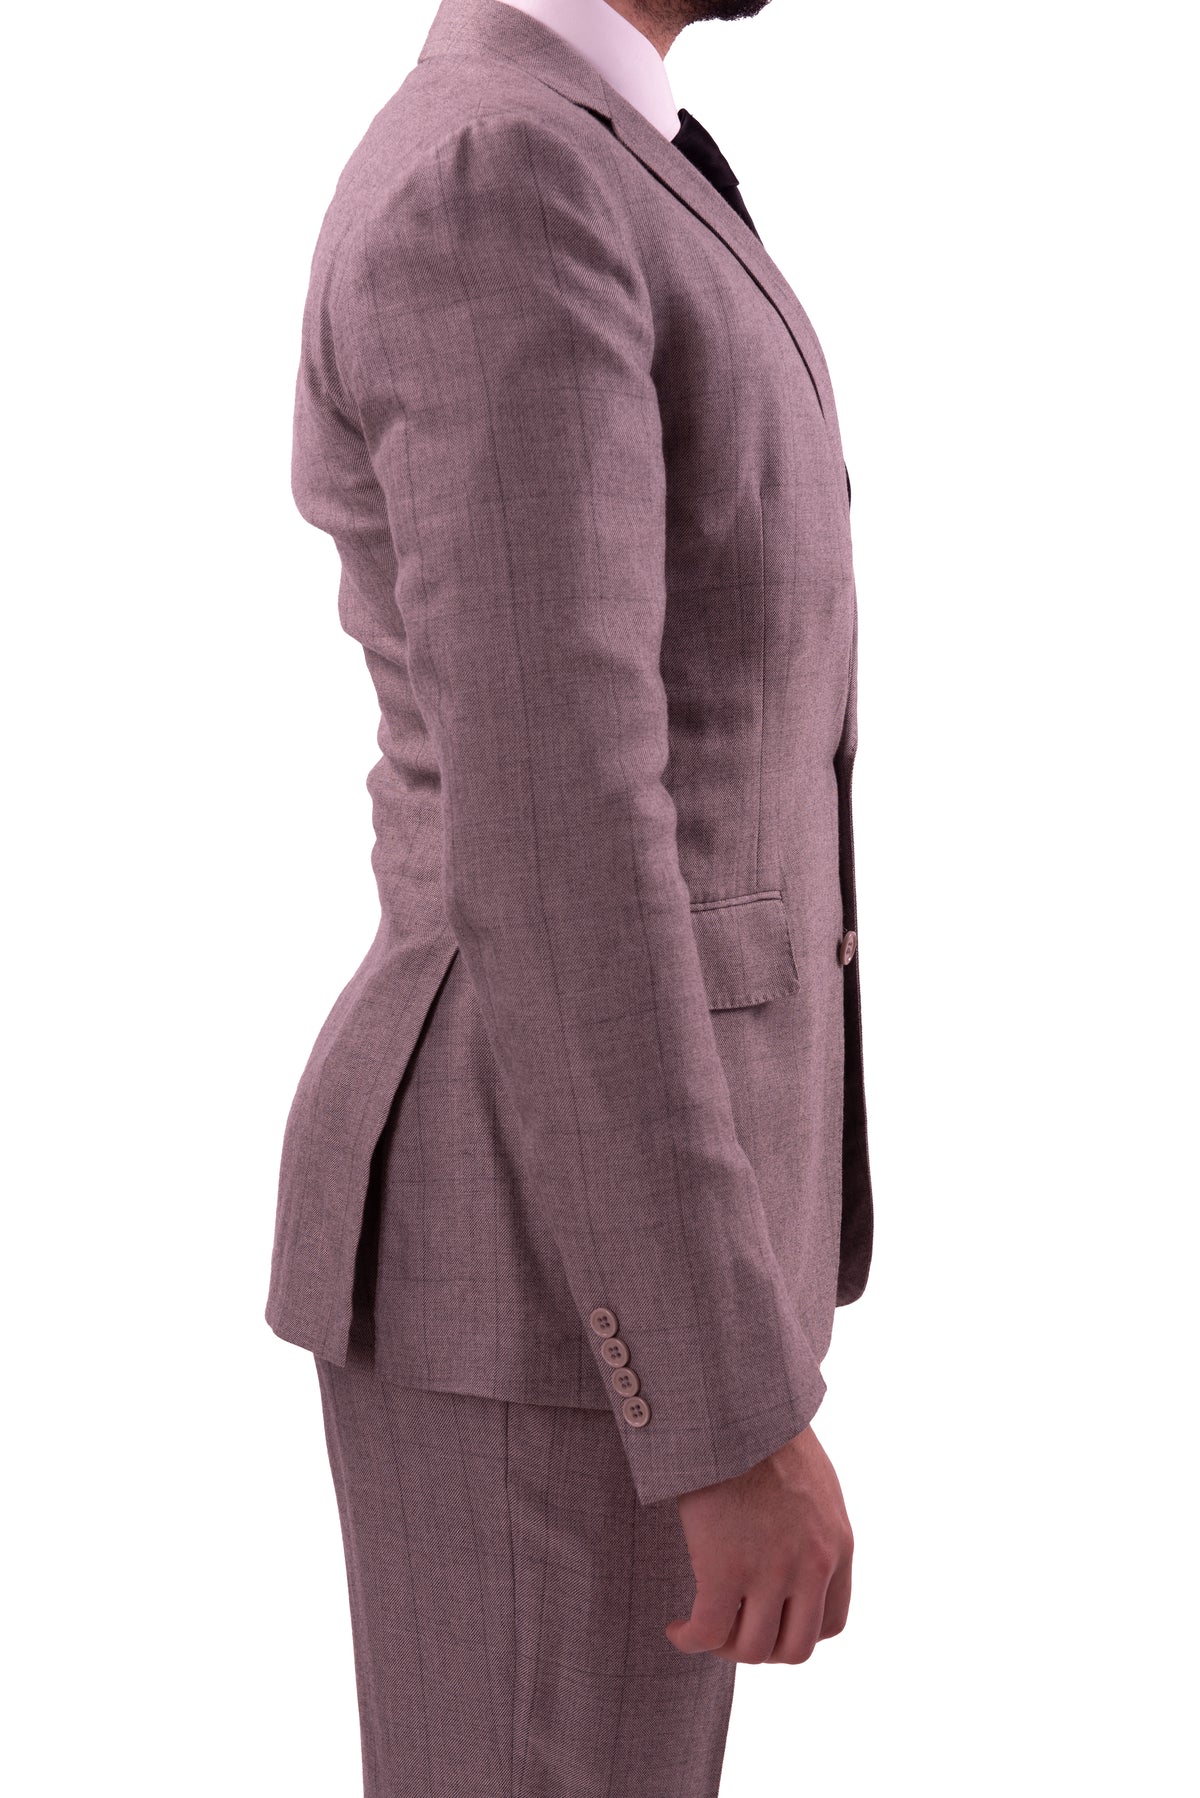 Ralph Lauren Purple Label Mens 38R Extra Slim Fit Gray Pure Cashmere 2 Piece Suit